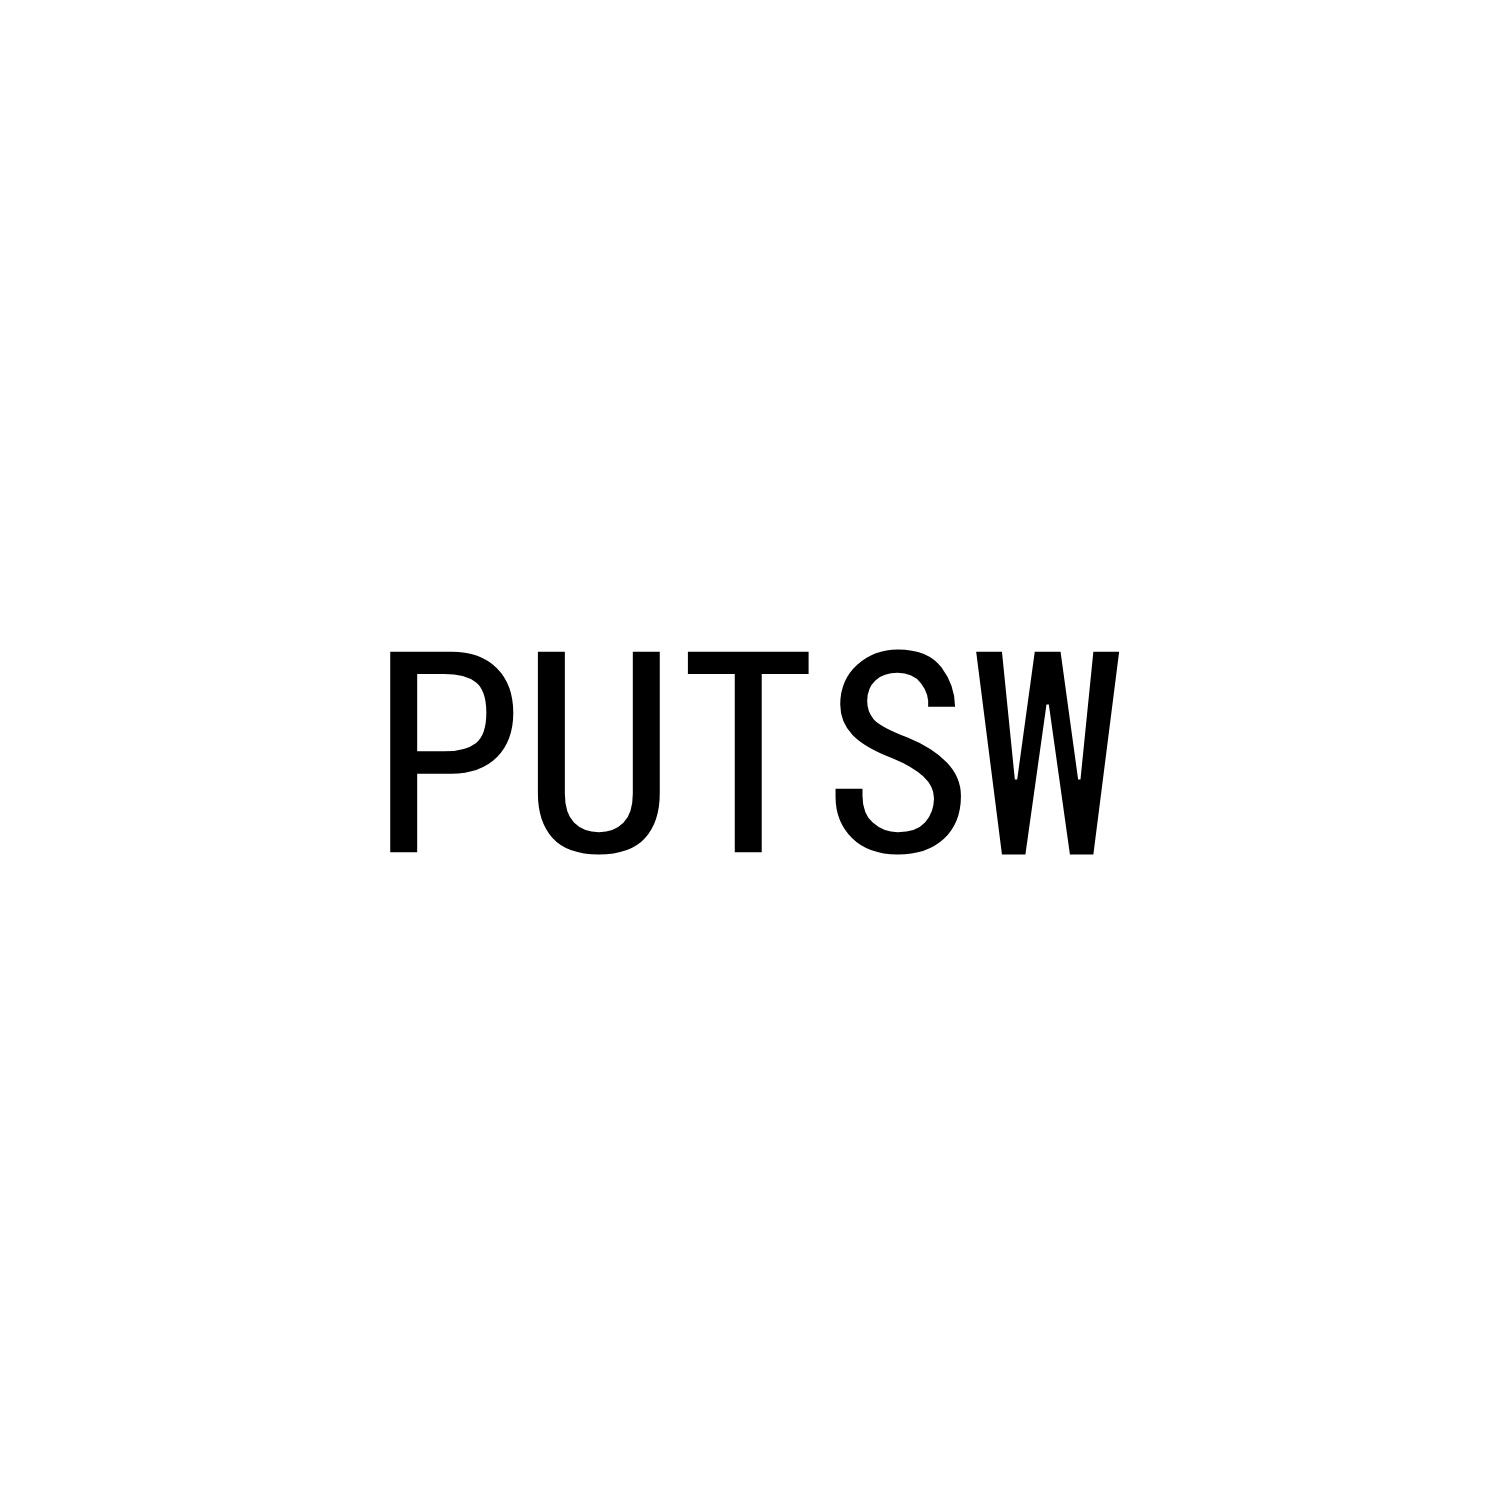 PUTSW